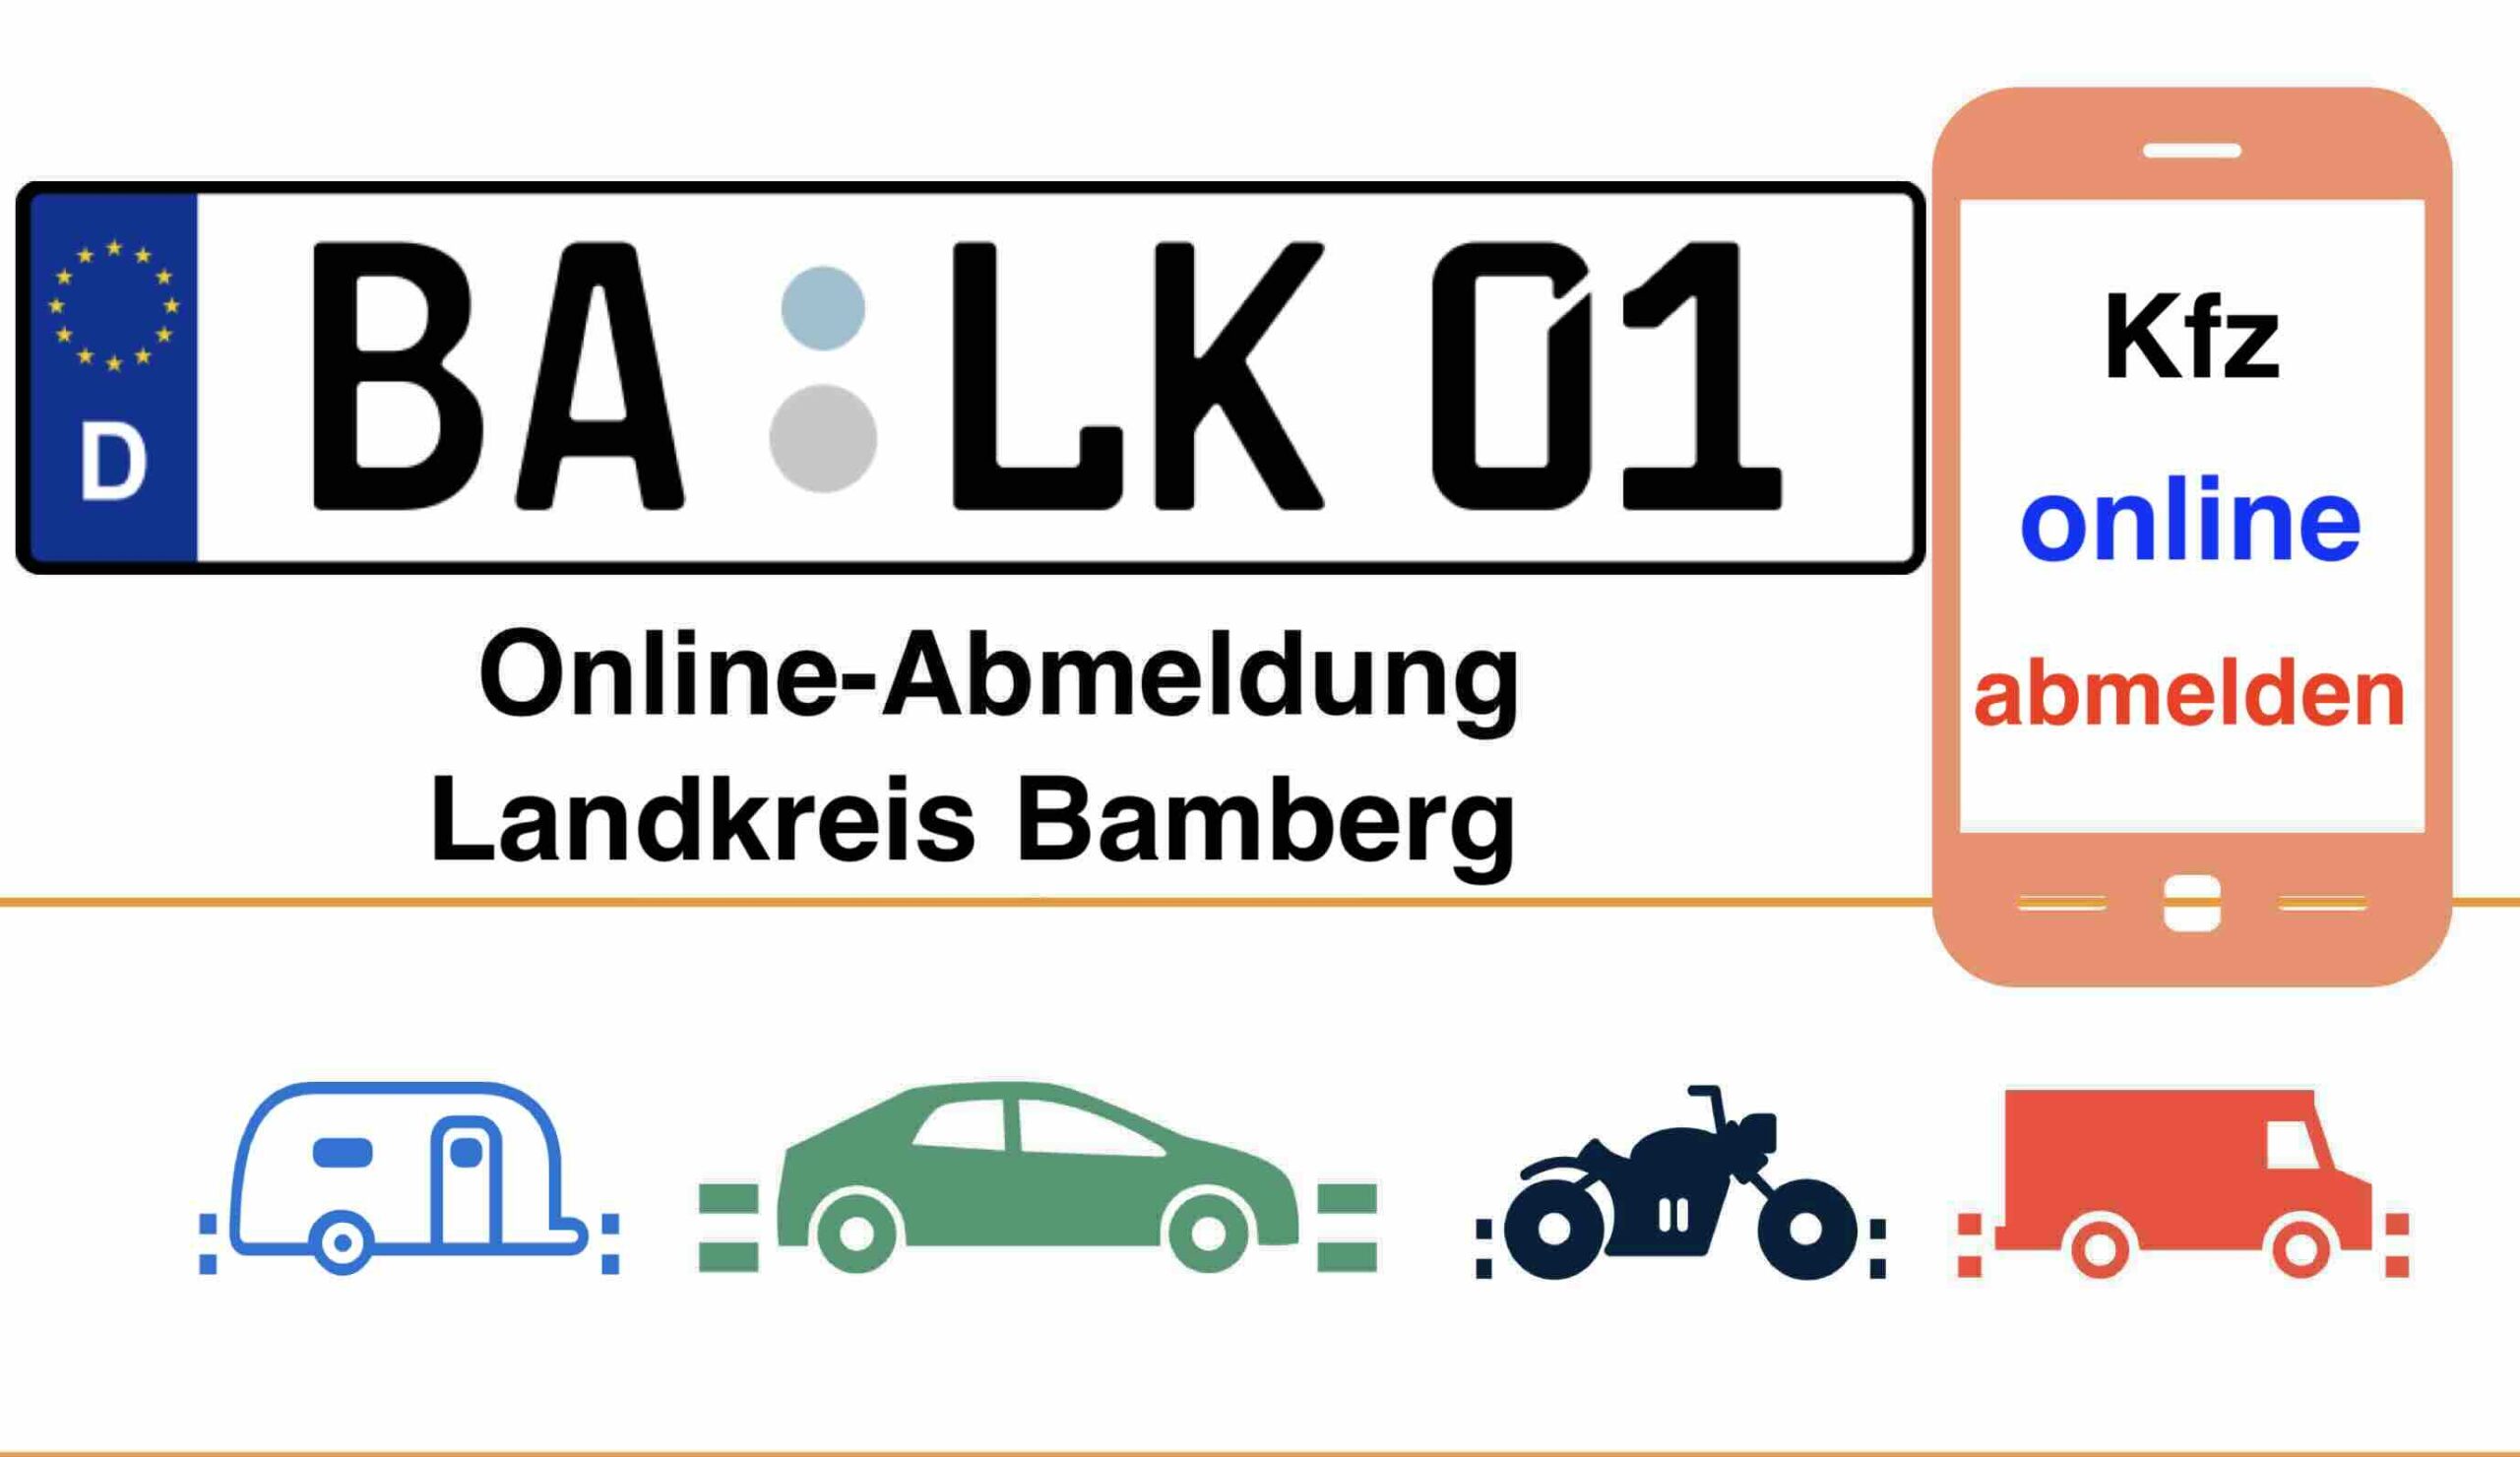 Kfz Online-Abmeldung im Landkreis Bamberg 